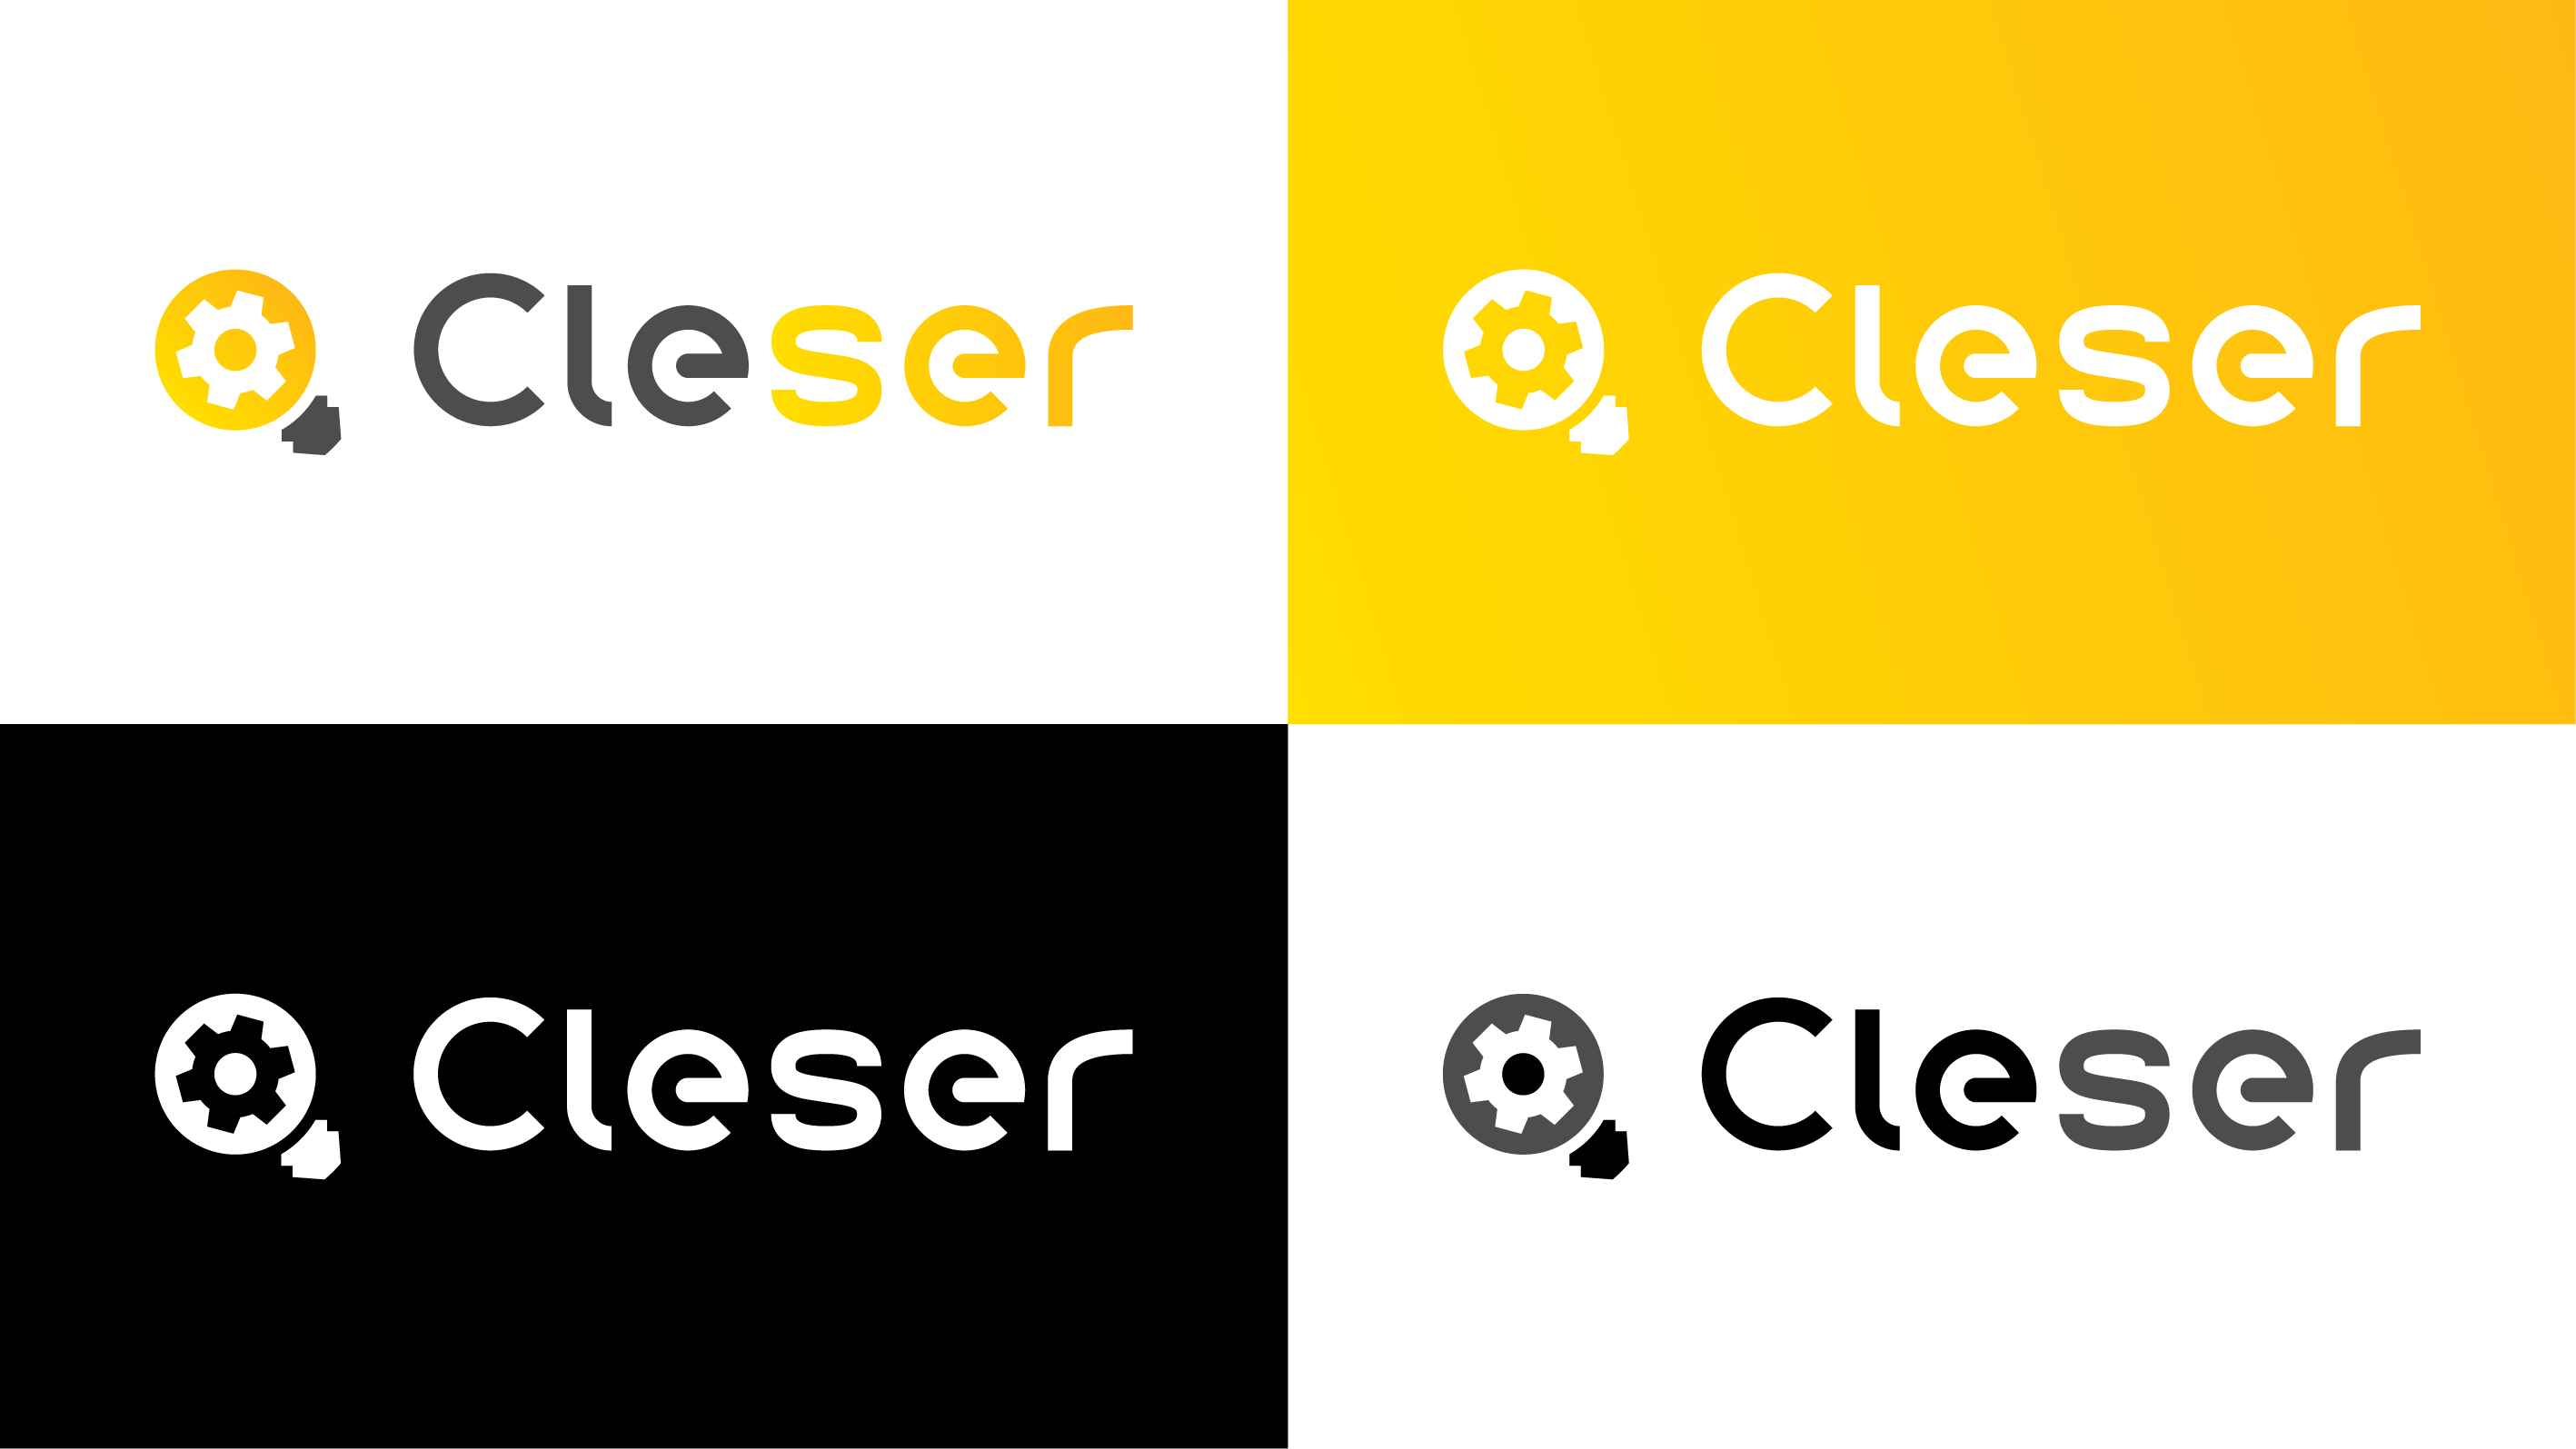 Cleser design